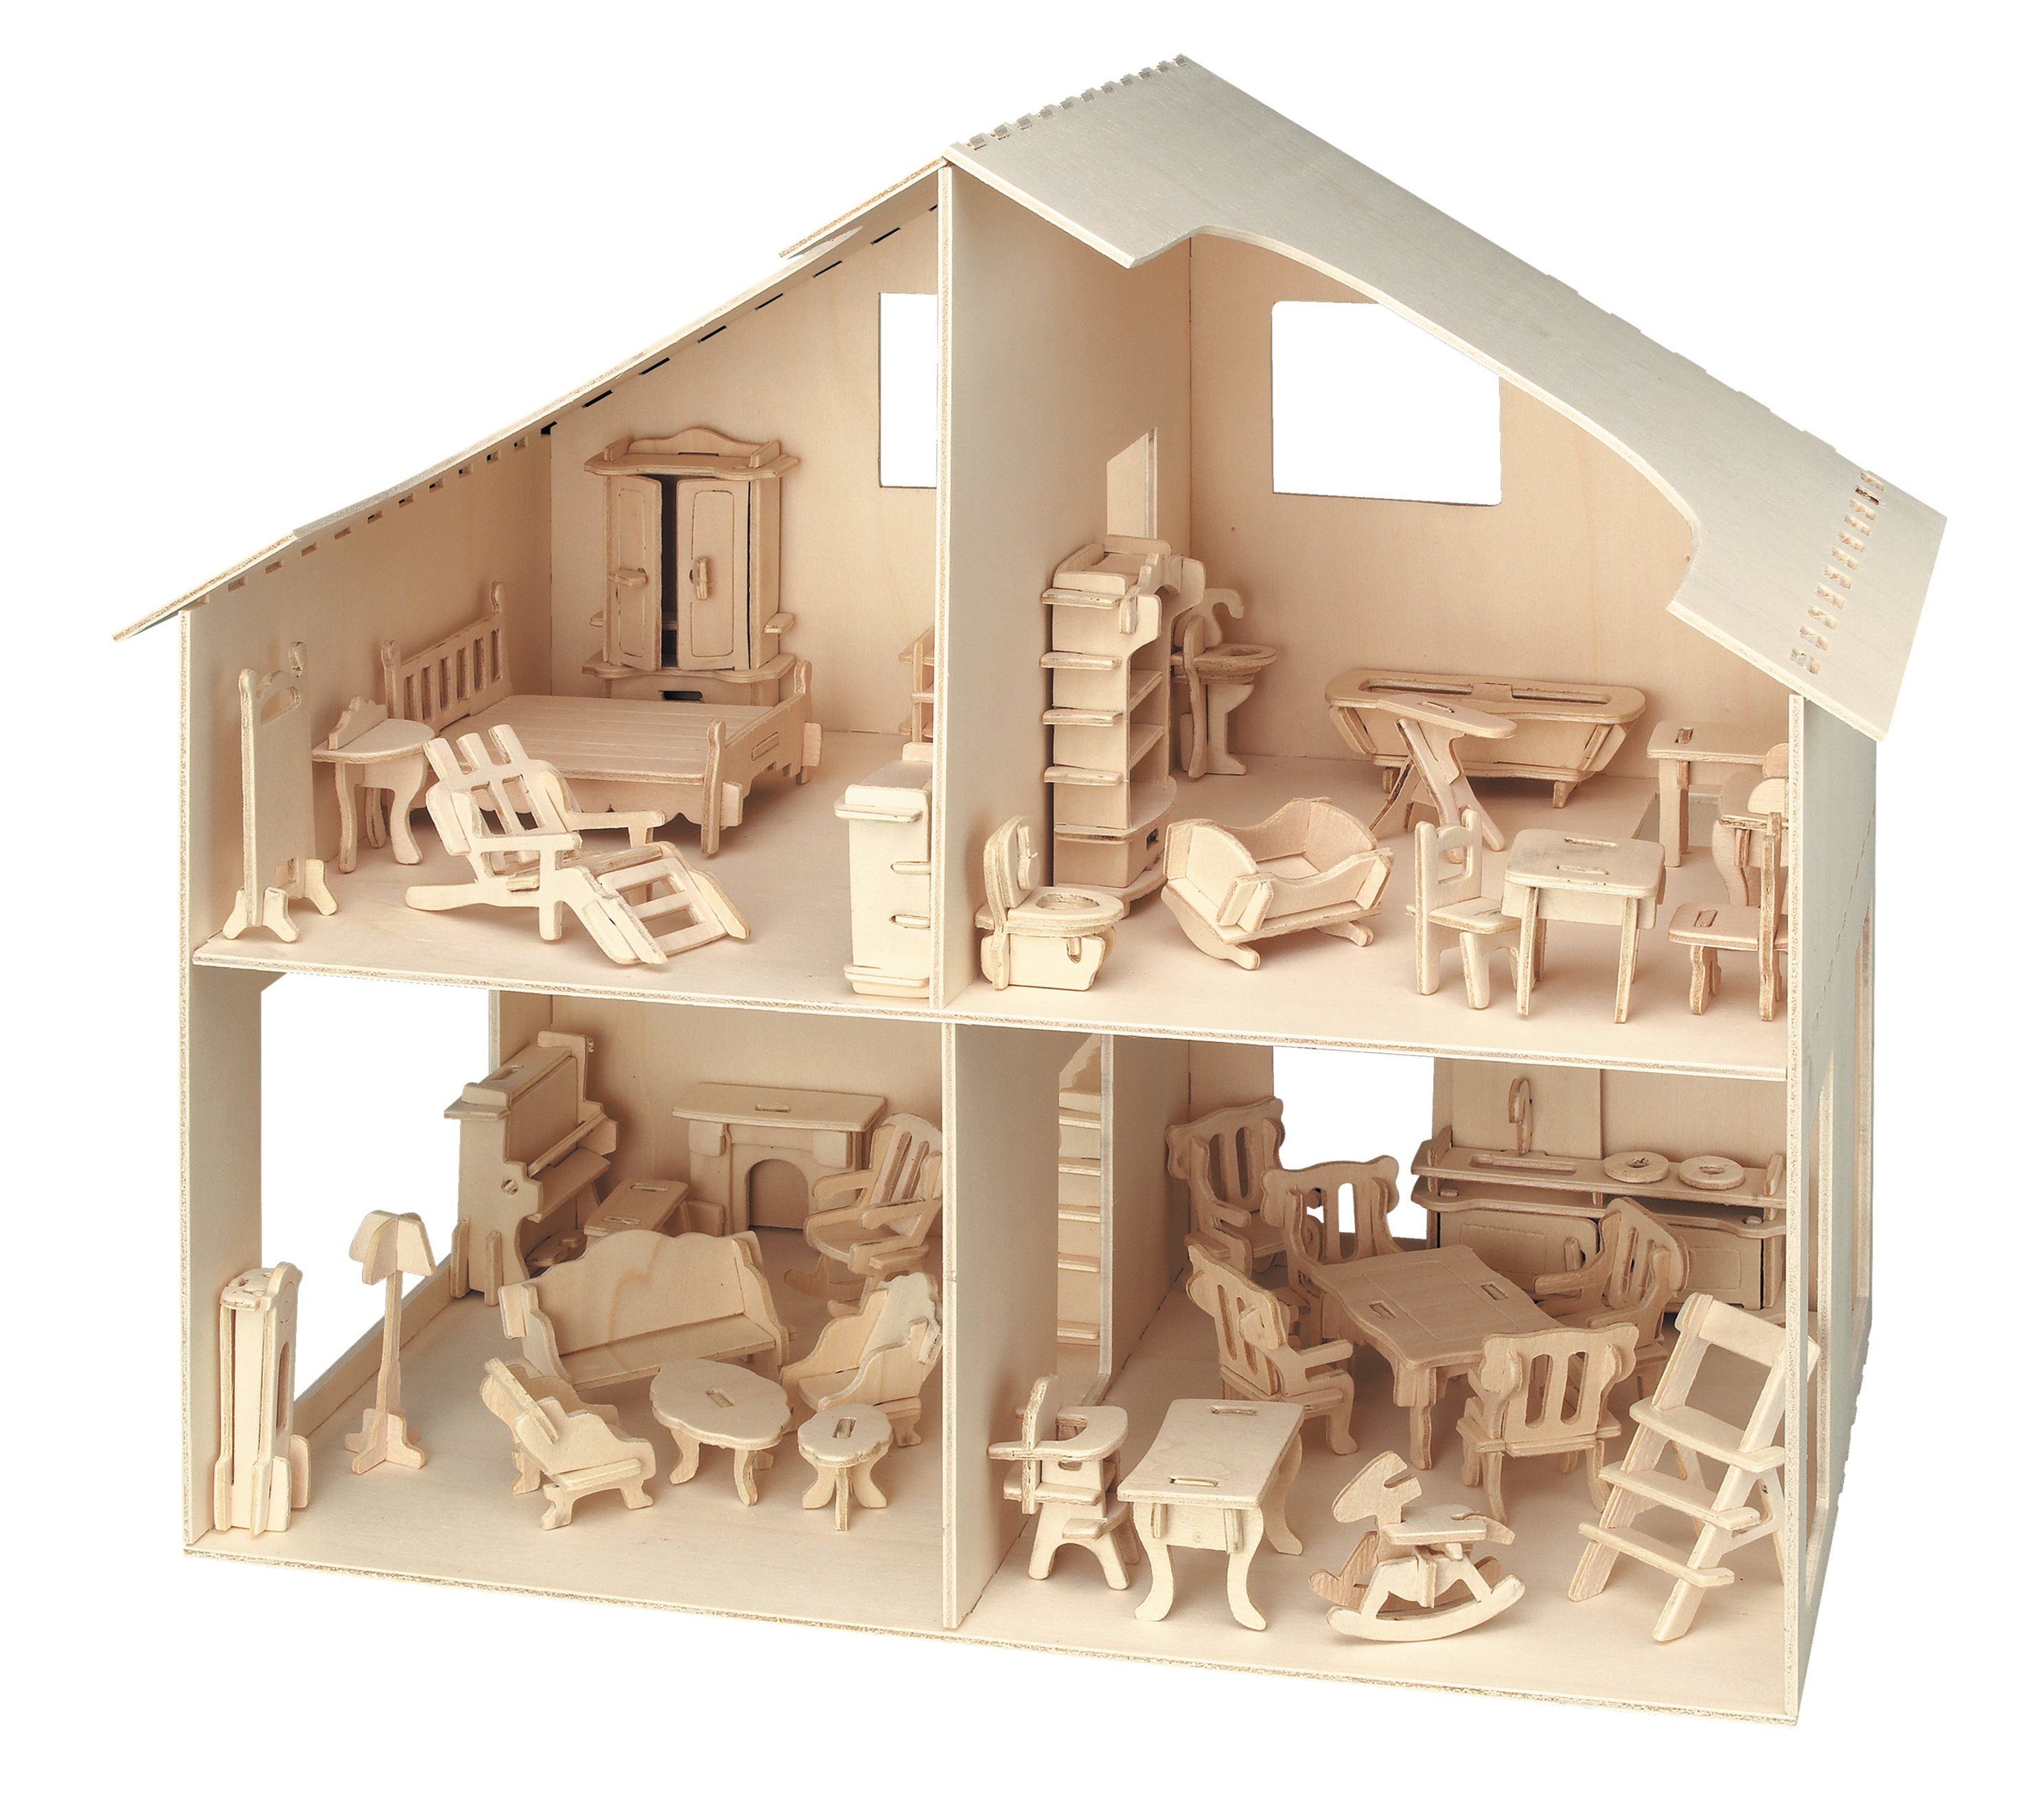 880, Möbeln, 252 Pebaro 3D-Puzzle Holzbausatz mit Puppenhaus Puzzleteile